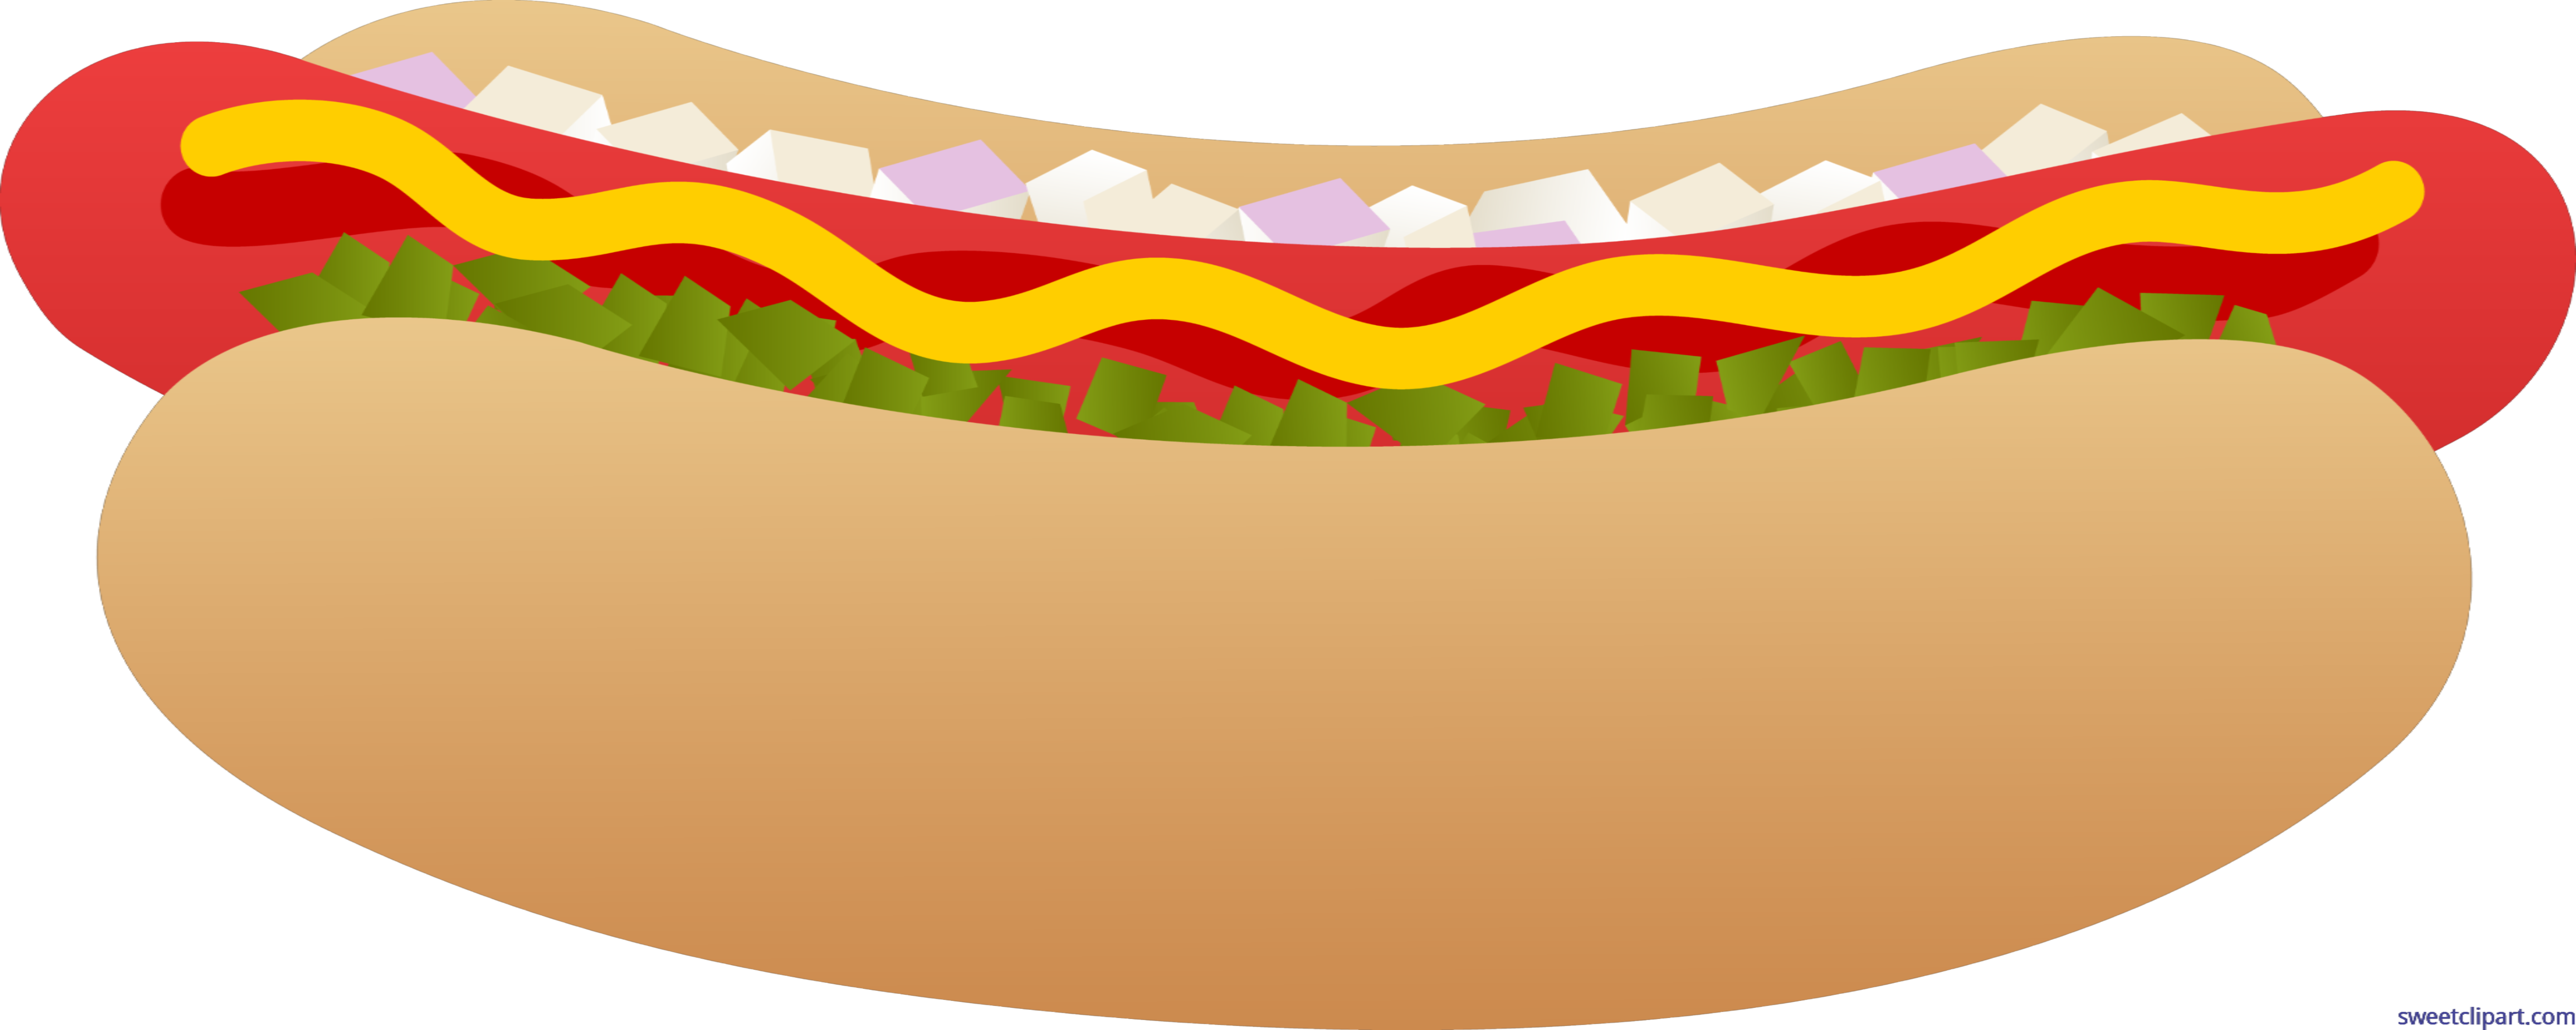 Hot Dog On Bun Clip Art